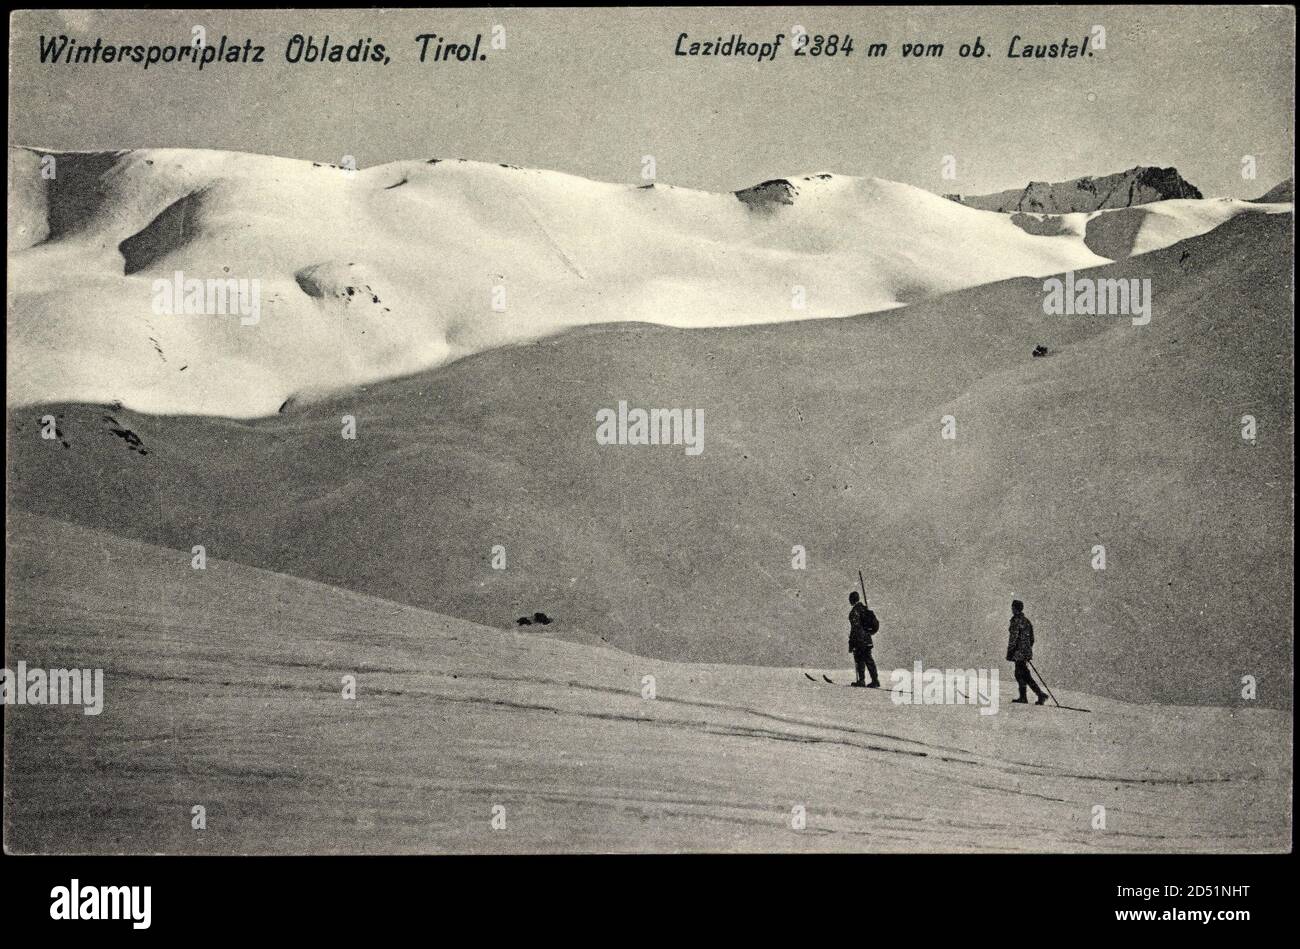 Obladis Tirol, verschneite Gegend, Ski Fahrer | usage worldwide Stock Photo